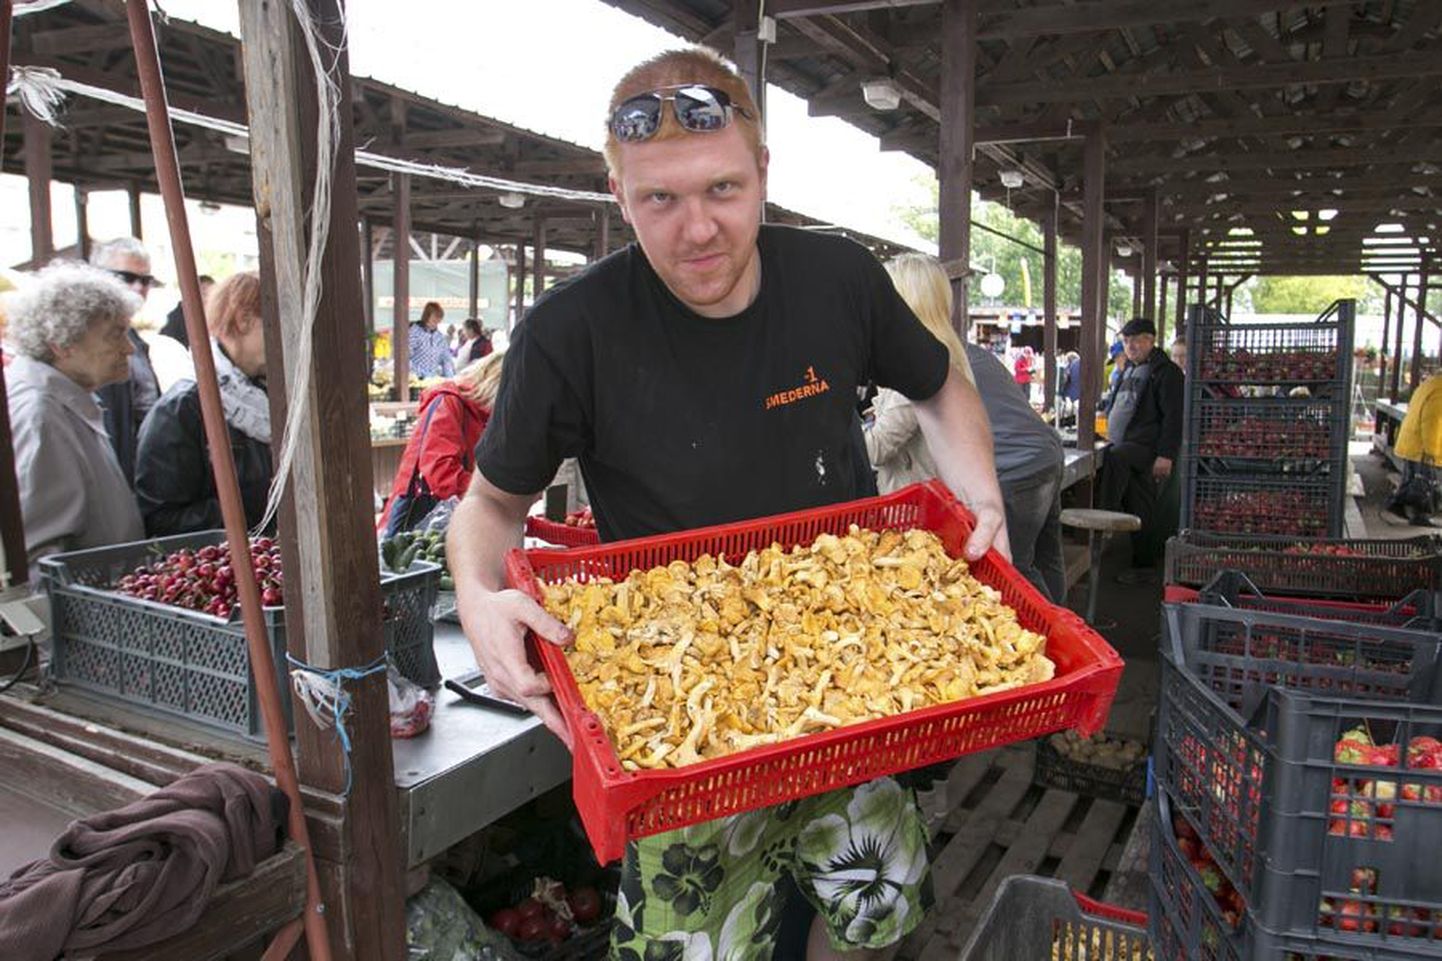 Turul seeni pakkunud Tarmo Varblane reedelõunase saagiga, millele tänaseks on ilmselt juba lisa tulnud.